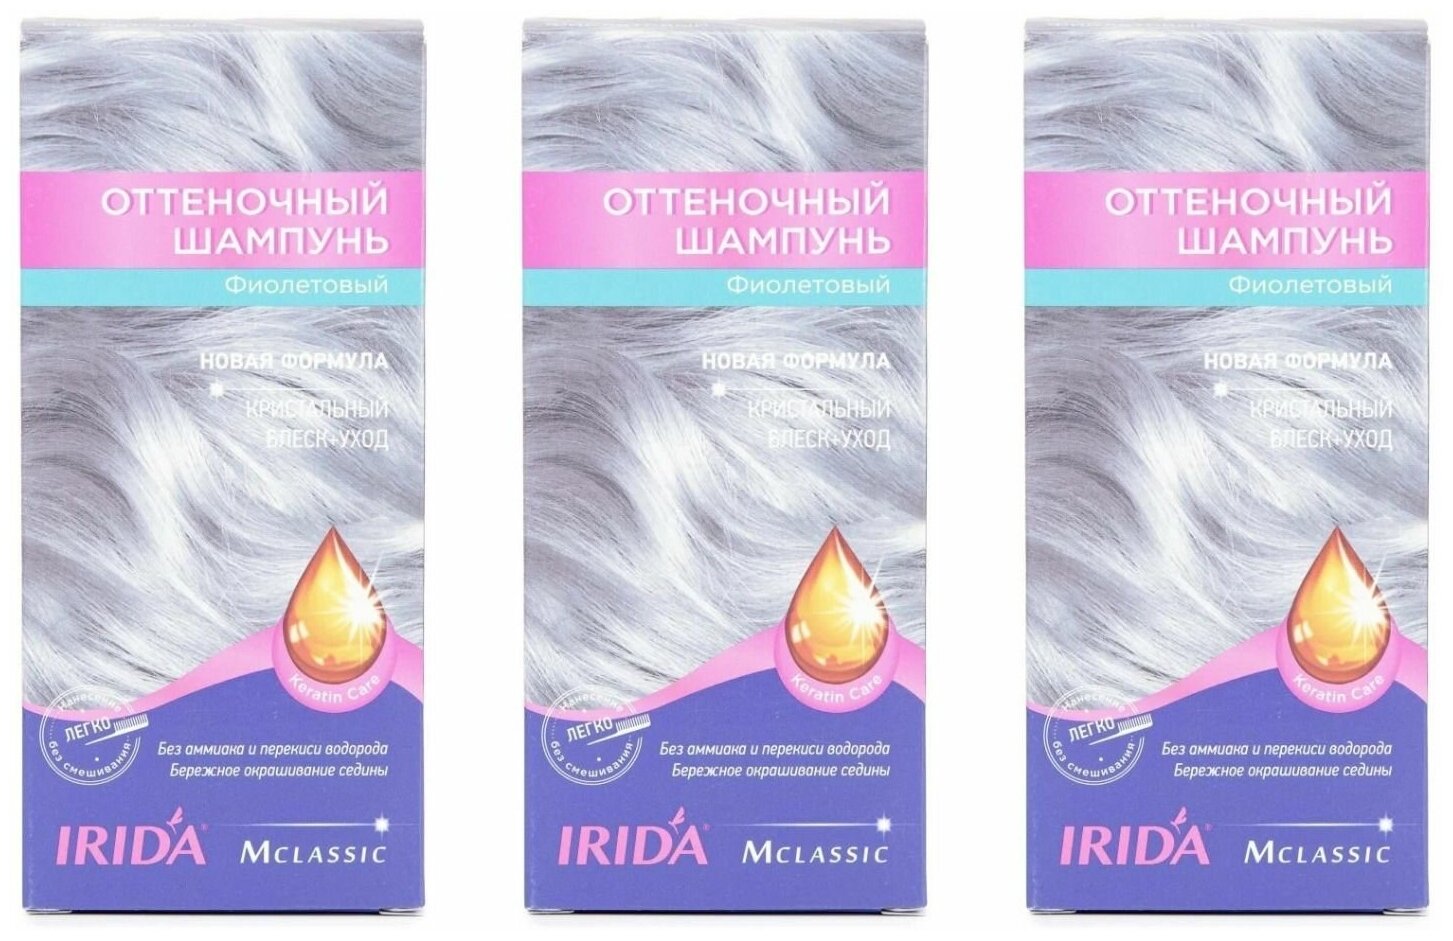 Оттеночный шампунь IRIDA фиолетовый